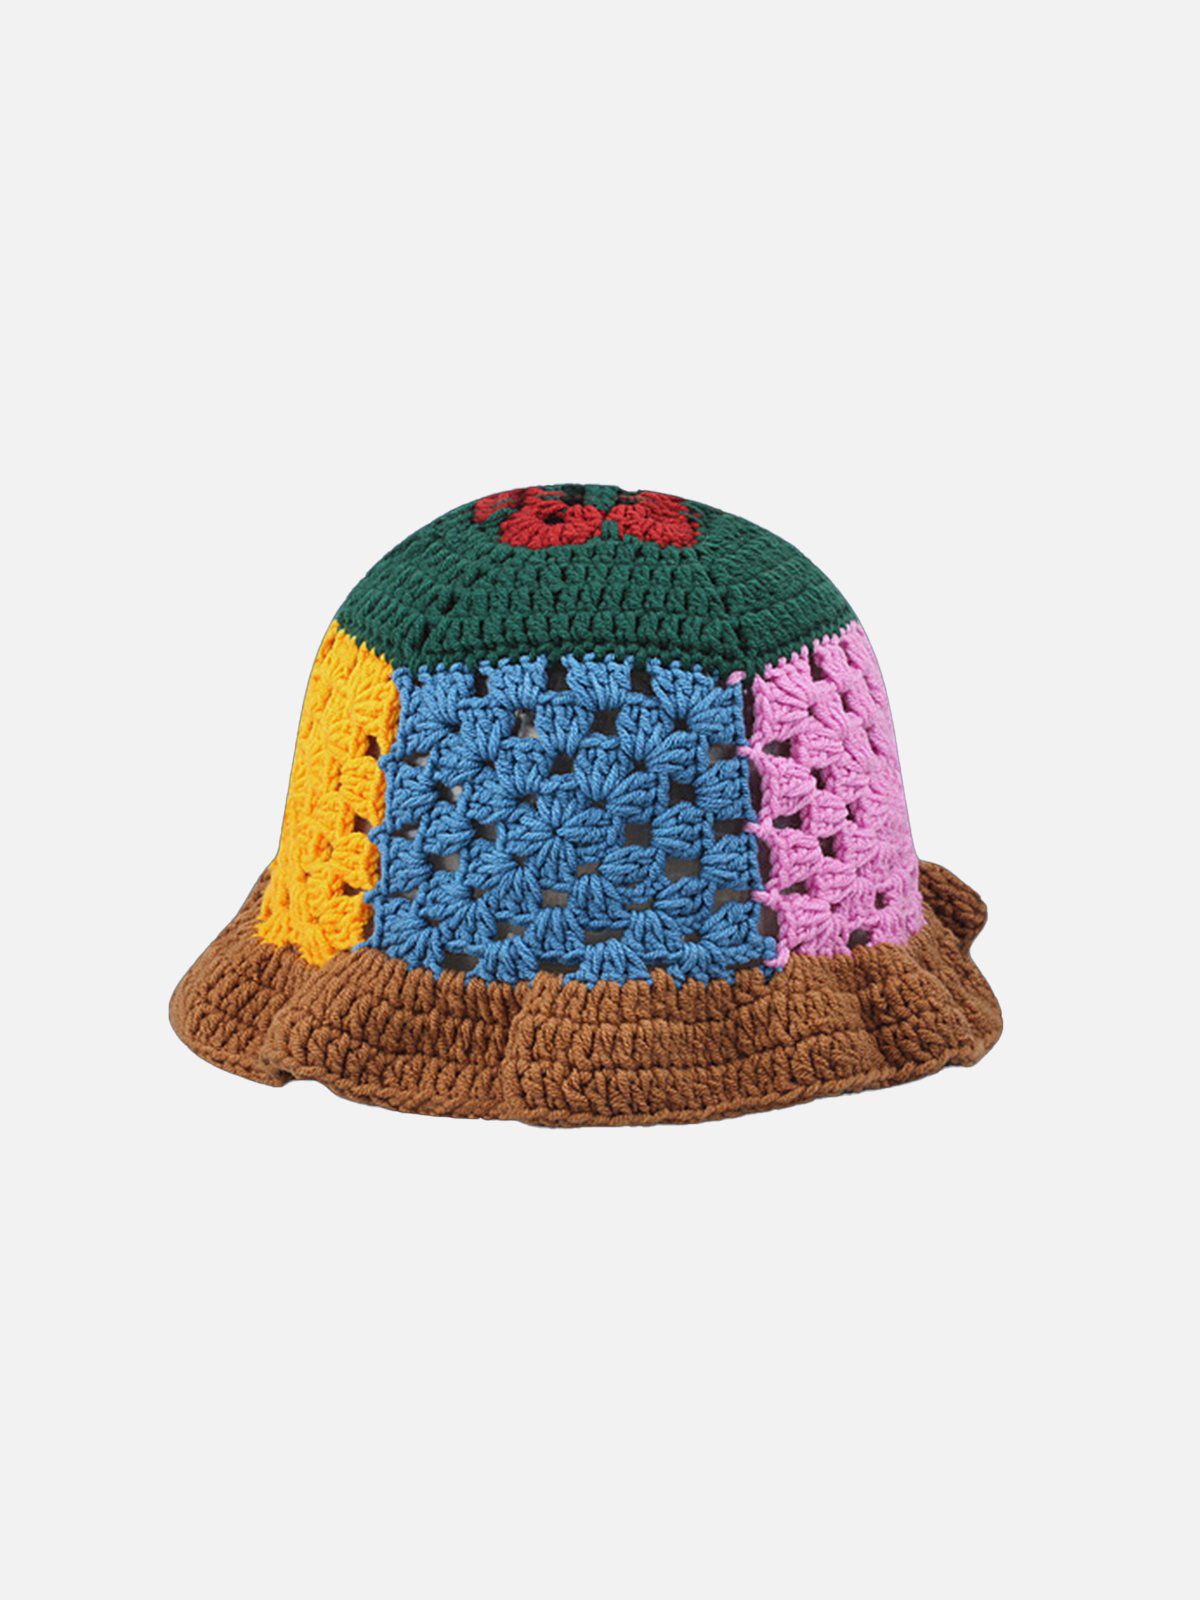 良ければ専用お願いしますsoonerorlater   Hand-knitted Bucket Hat